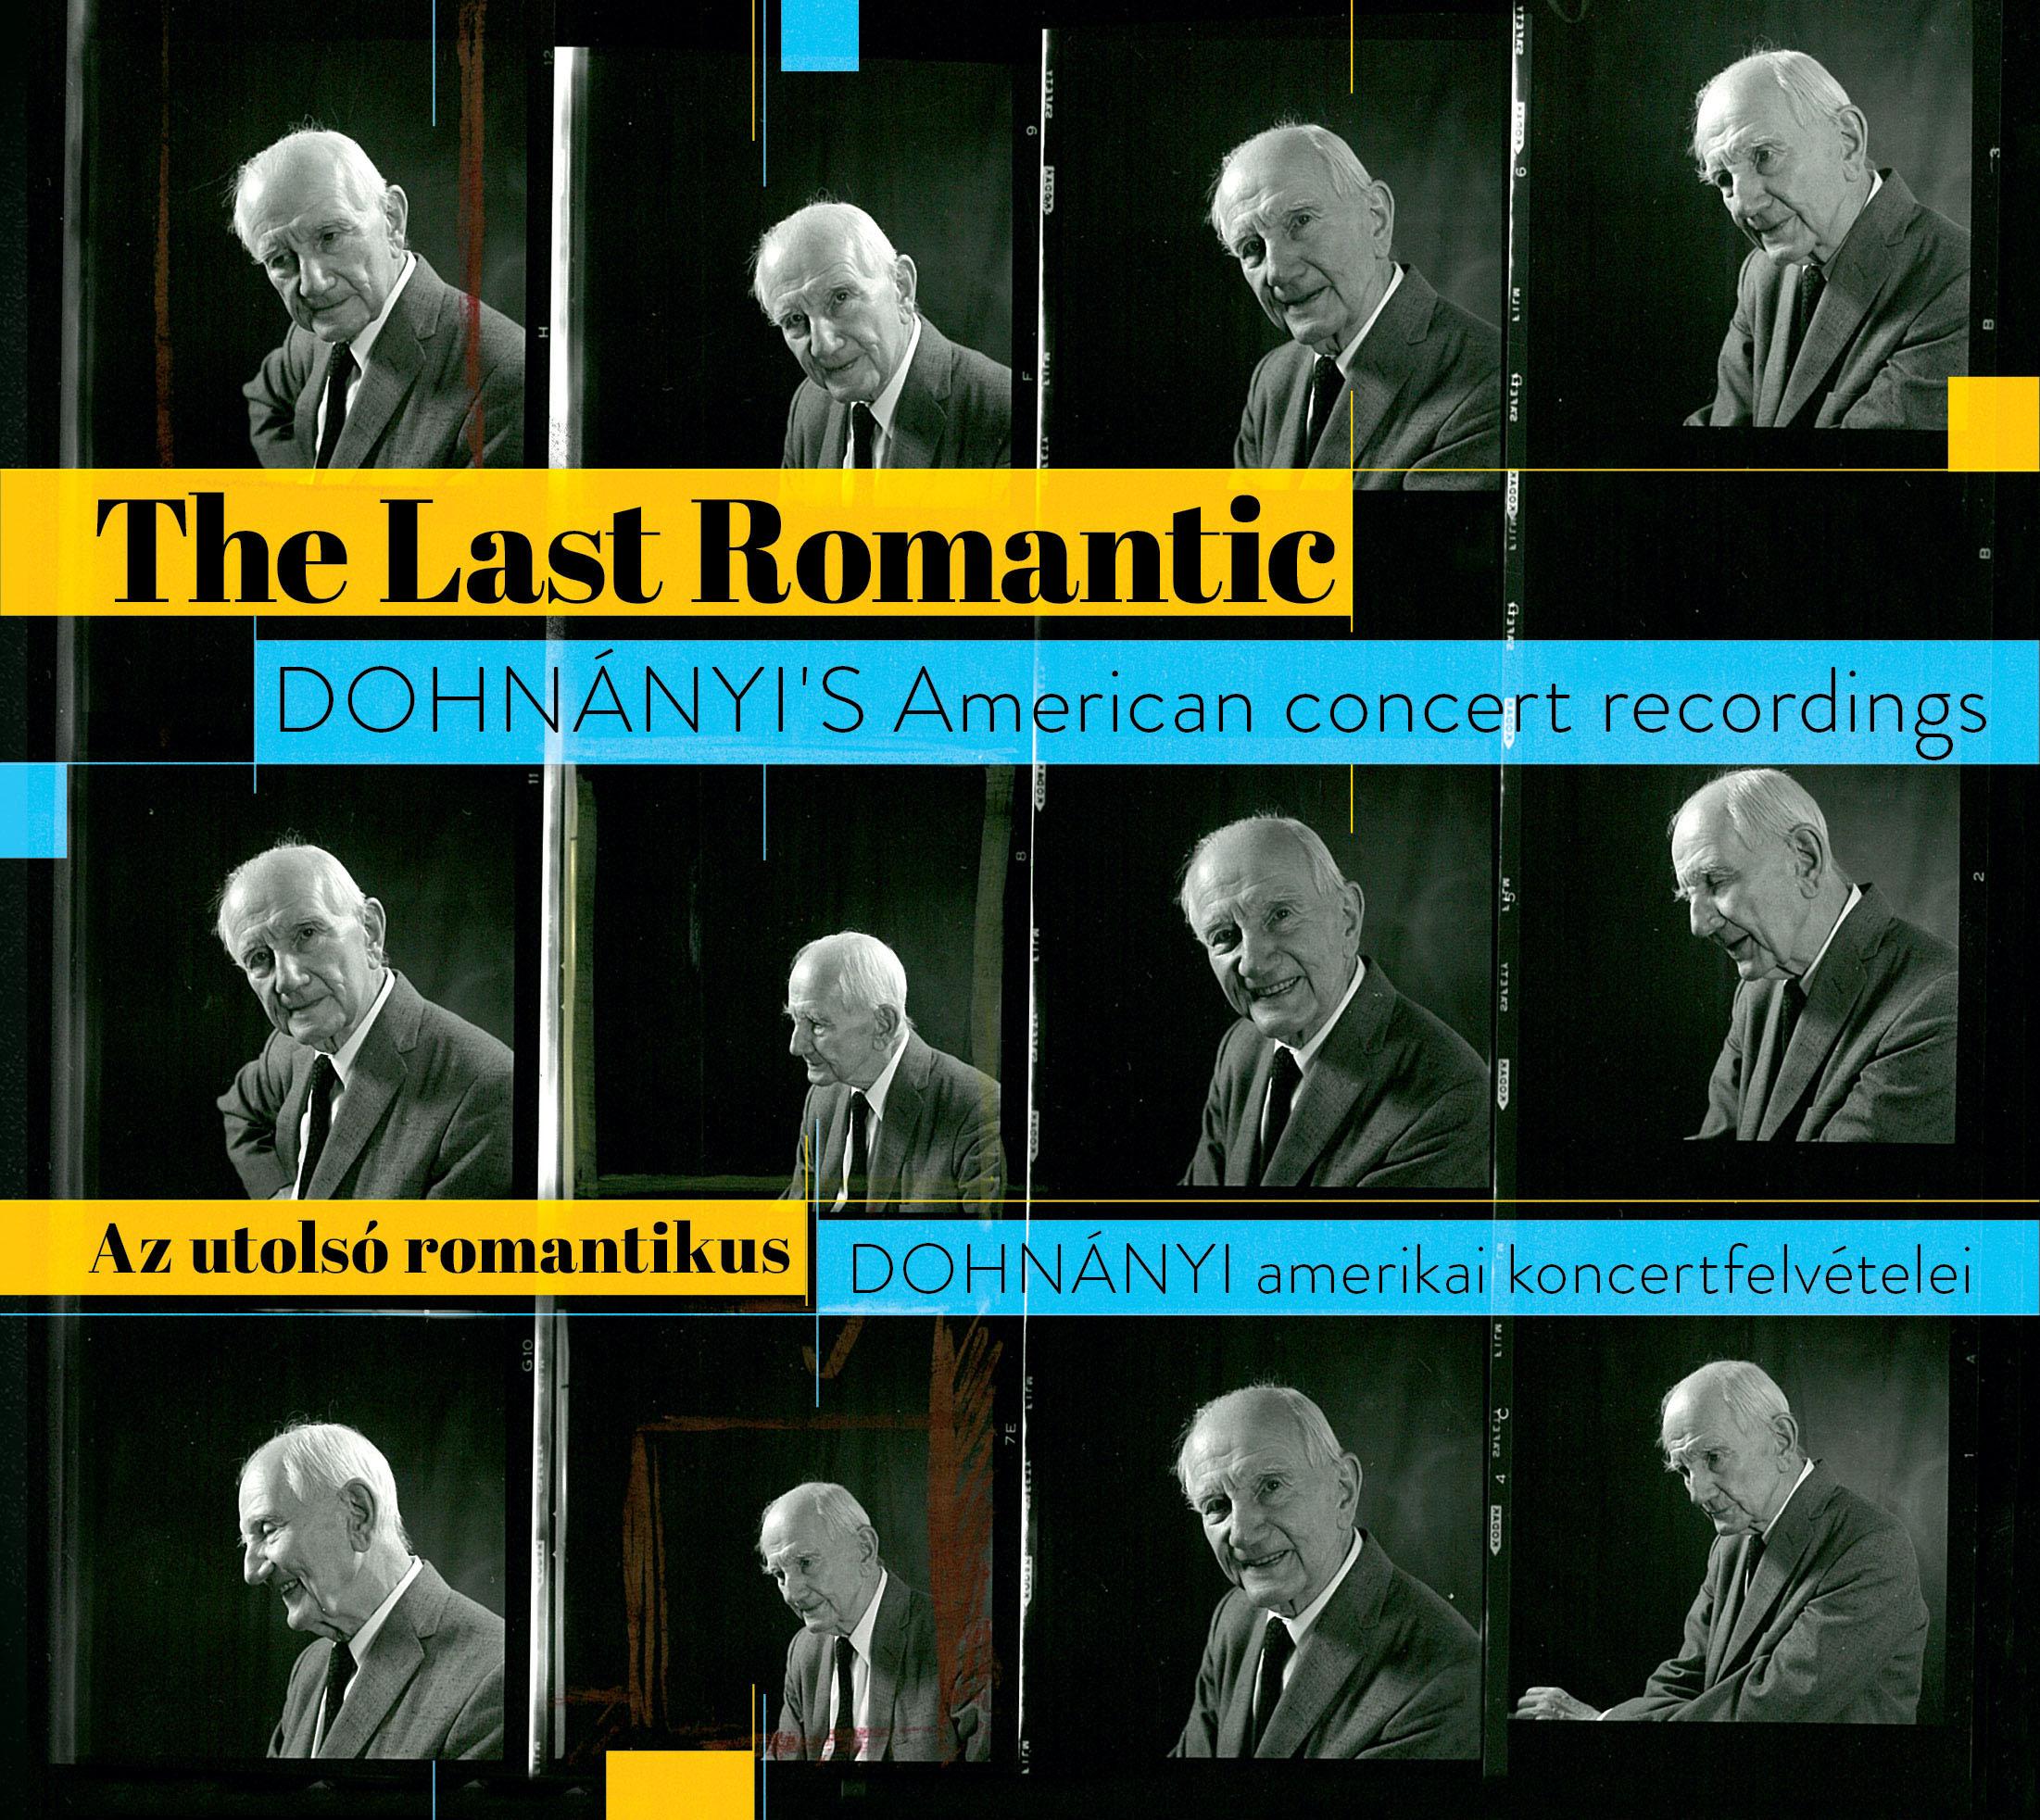  - Az utolsó romantikus - Dohnányi amerikai koncertfelvételei (dupla CD)